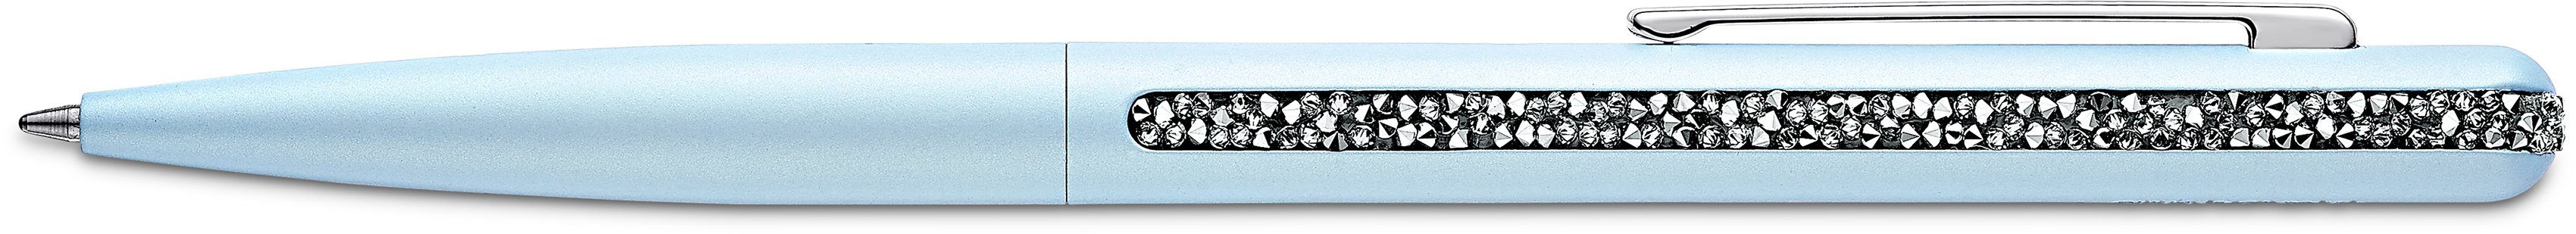 Swarovski Kugelschreiber Crystal Shimmer, 5595669, 5595673, 5595667, Swarovski® Kristallen 5595672, hellblau-metallfarben-kristallweiß mit 5595668, 5595671